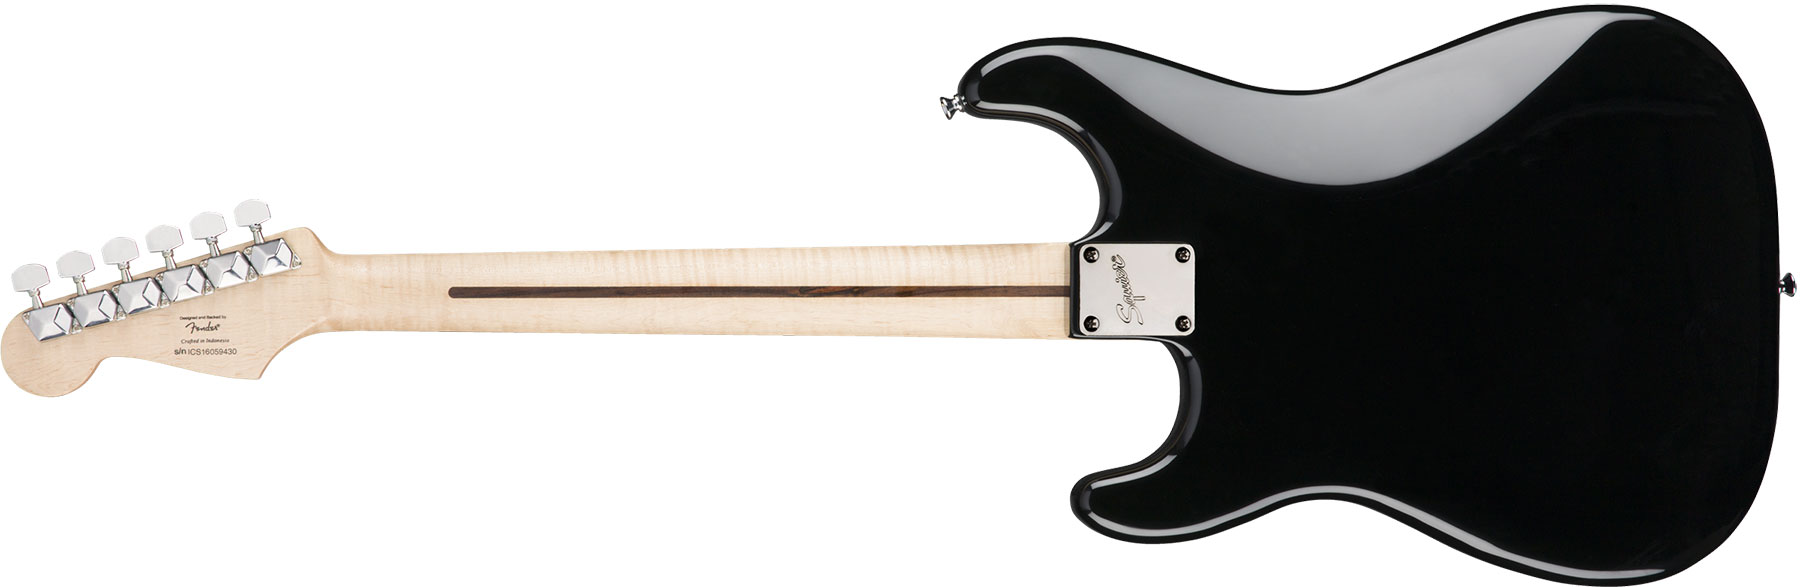 Squier Bullet Stratocaster Ht Sss Rw - Black - Guitarra eléctrica con forma de str. - Variation 1